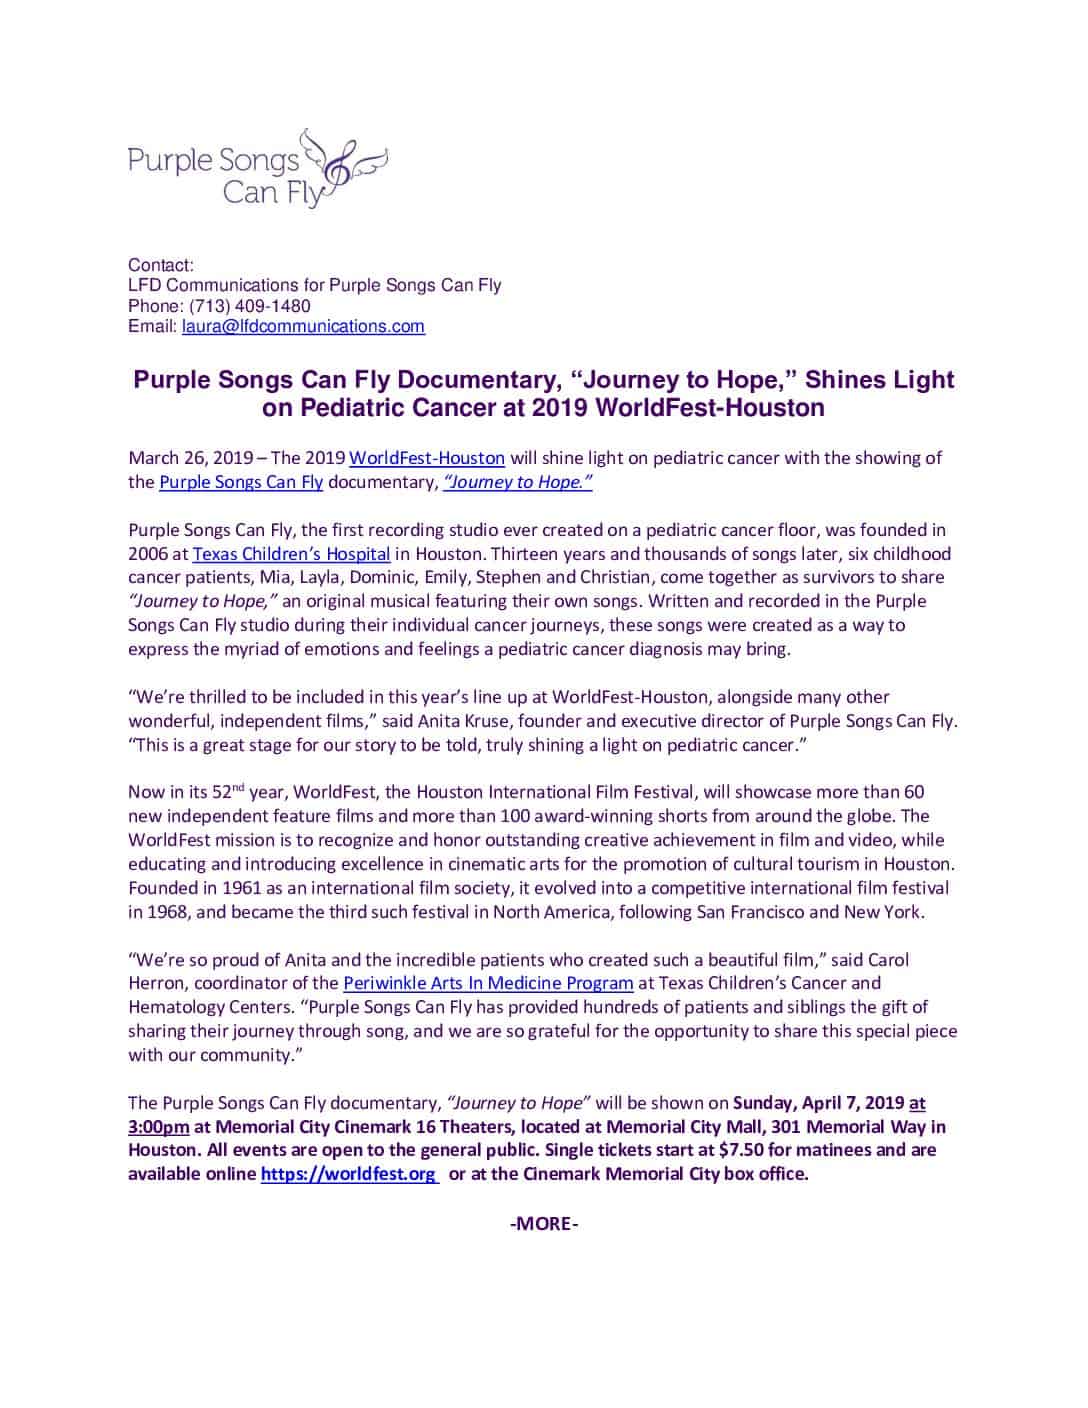 Purple Songs Can Fly WorldFest Press Release